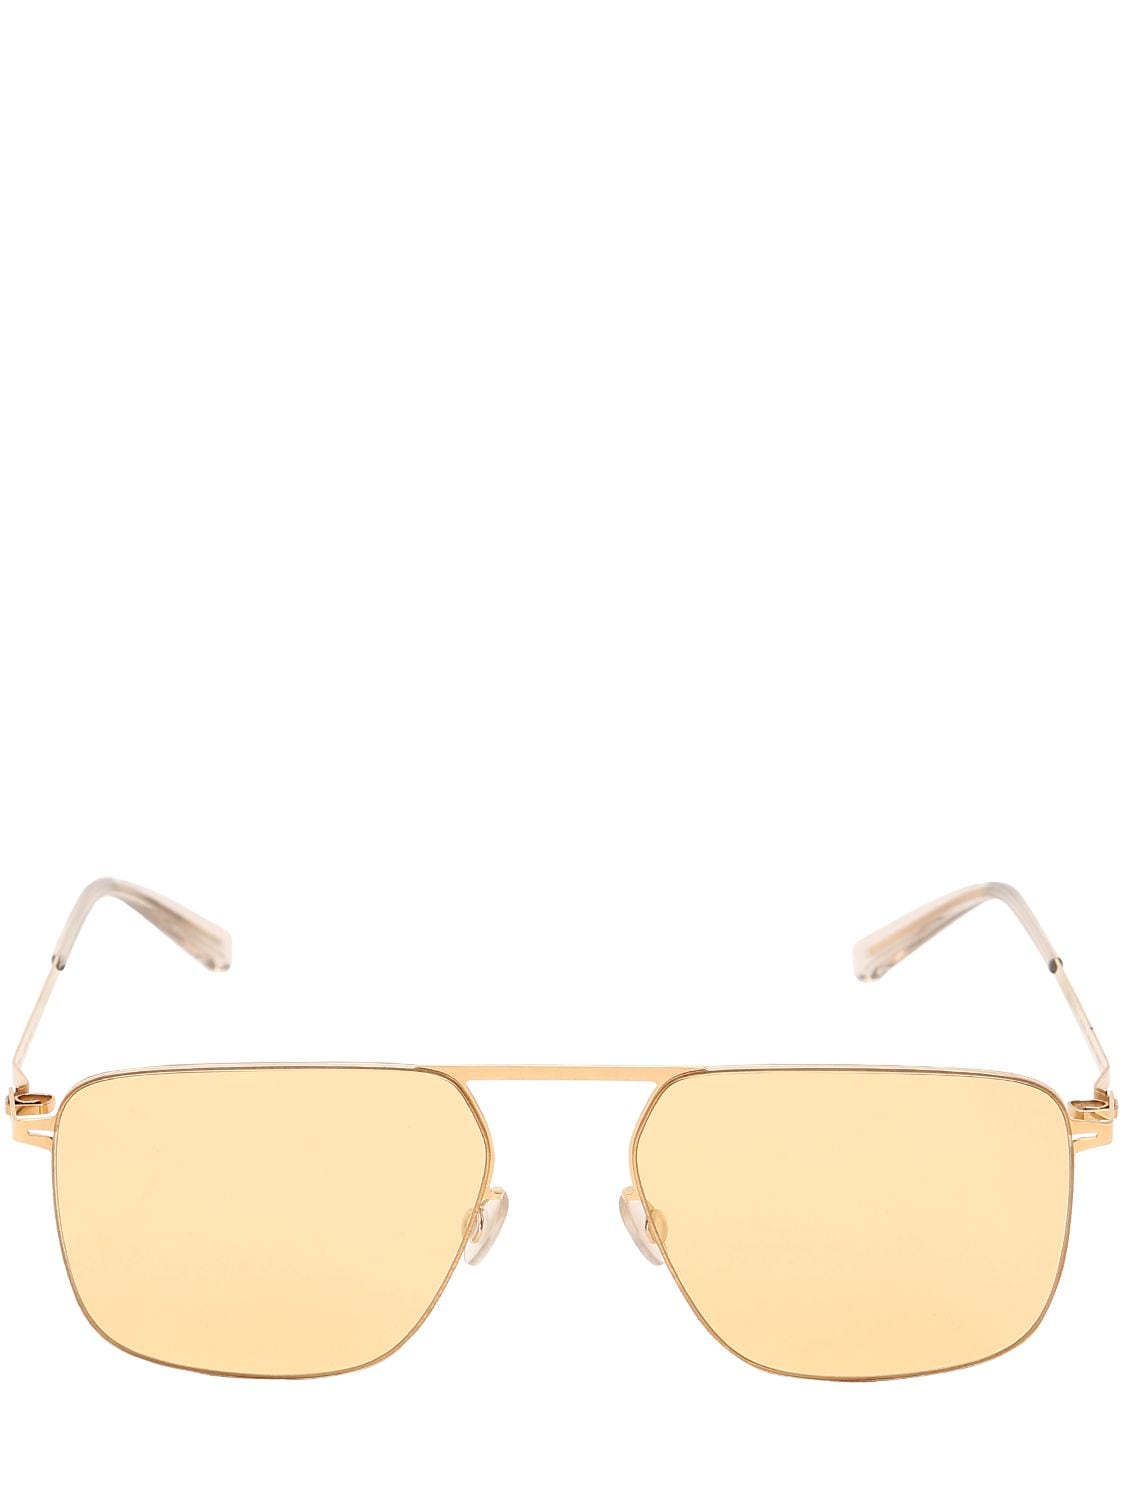 Mykita Masao Aviator Sunglasses In Gold